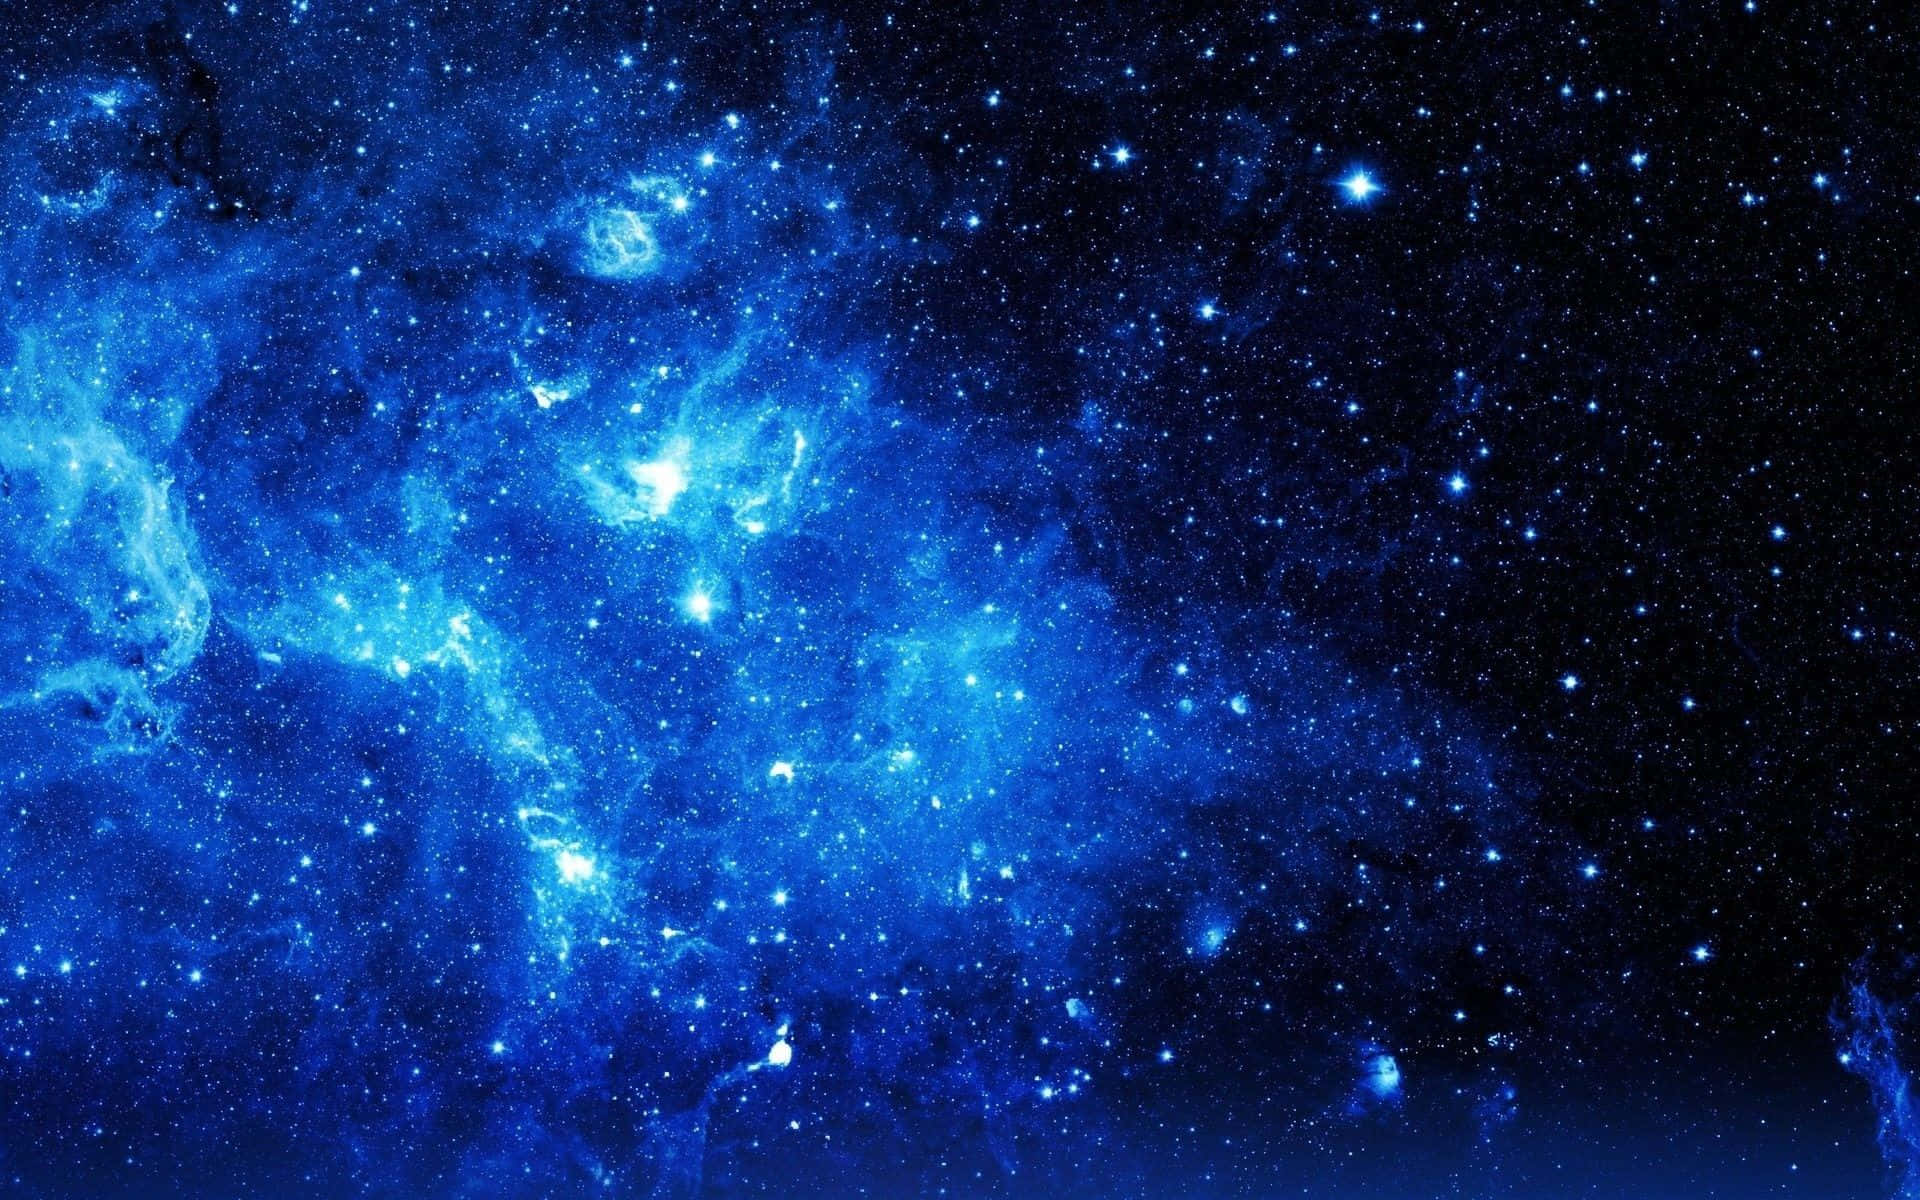 Hintergrundbildmit Weltraumsternen Und Blauer Galaxie.